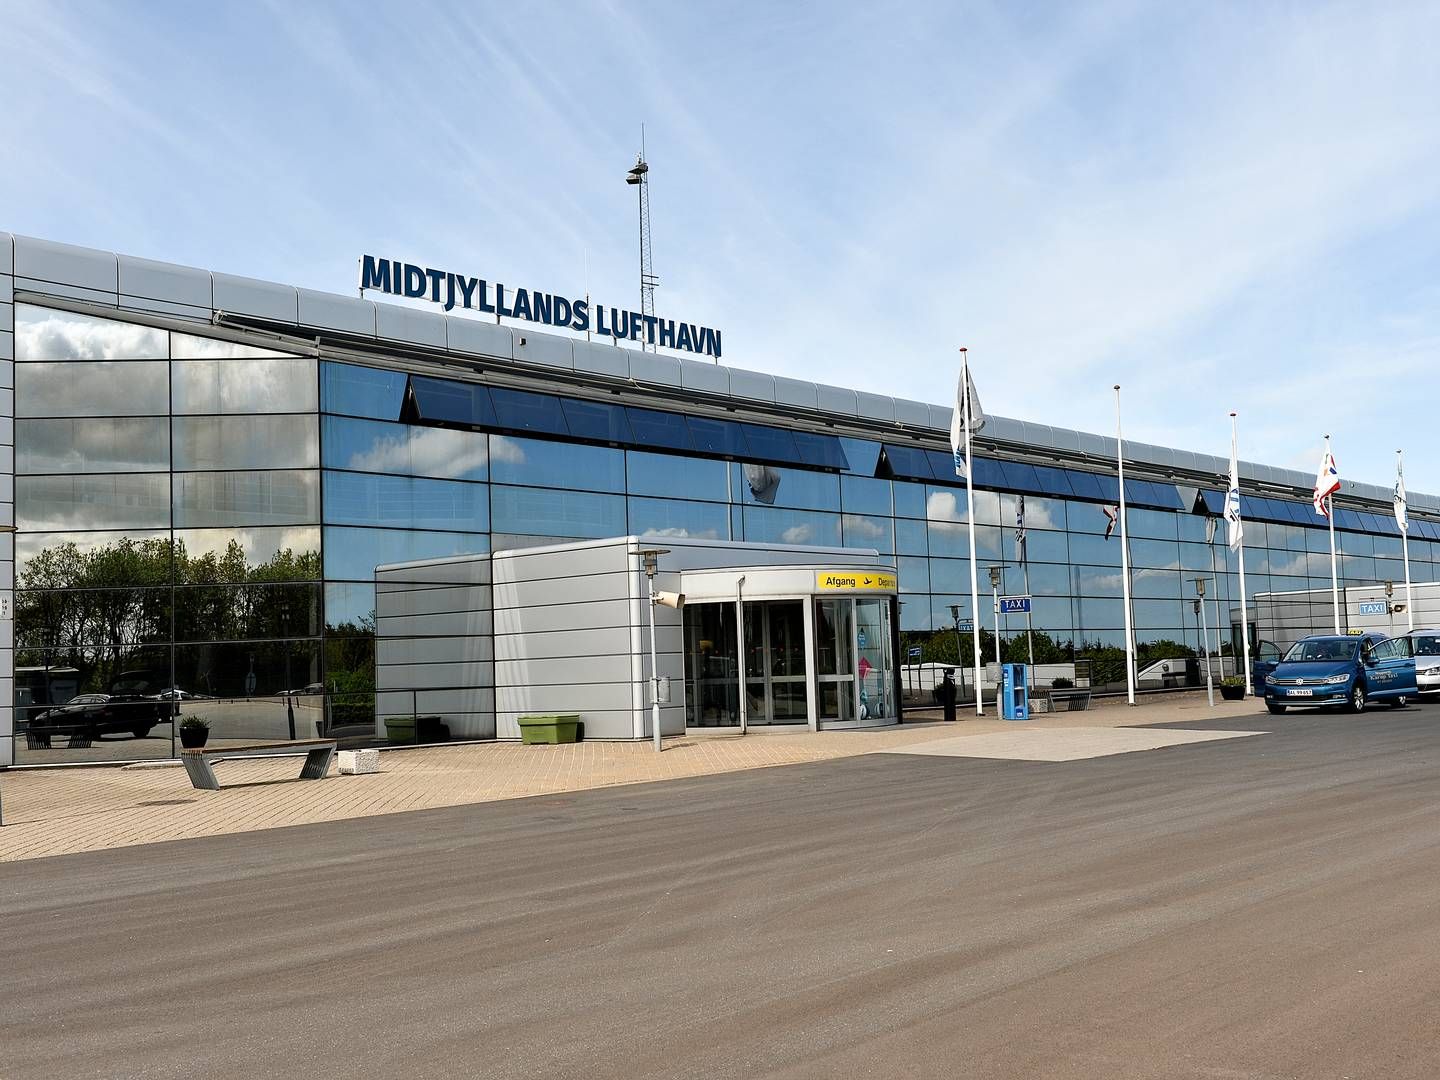 Midtjyllands Lufthavn i Karup | Photo: Ernst van Norde